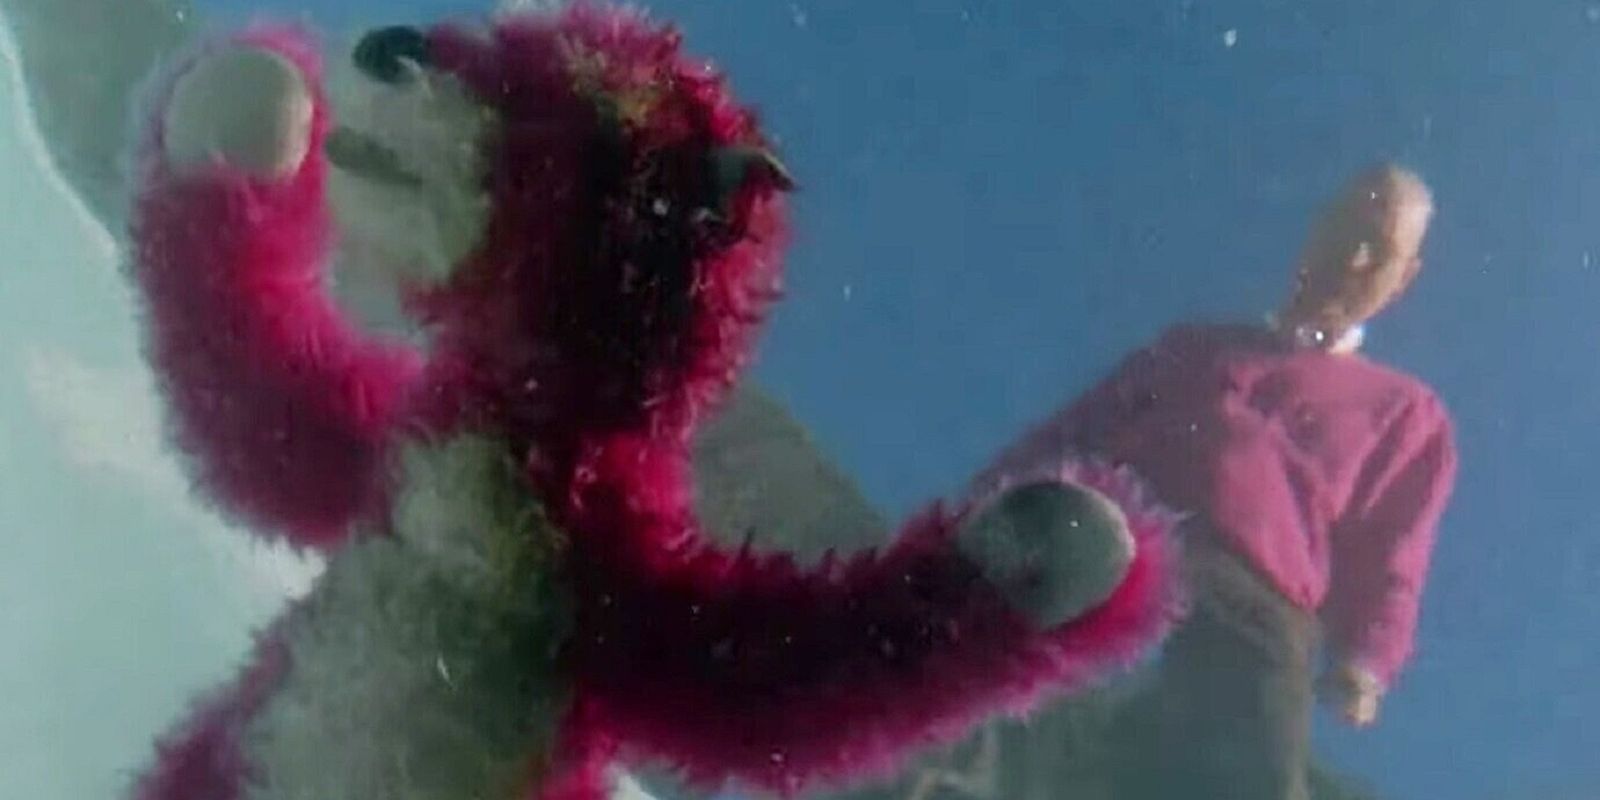 Walt seeing a pink bear in his pool in Season 2's flash-forward in Breaking Bad.